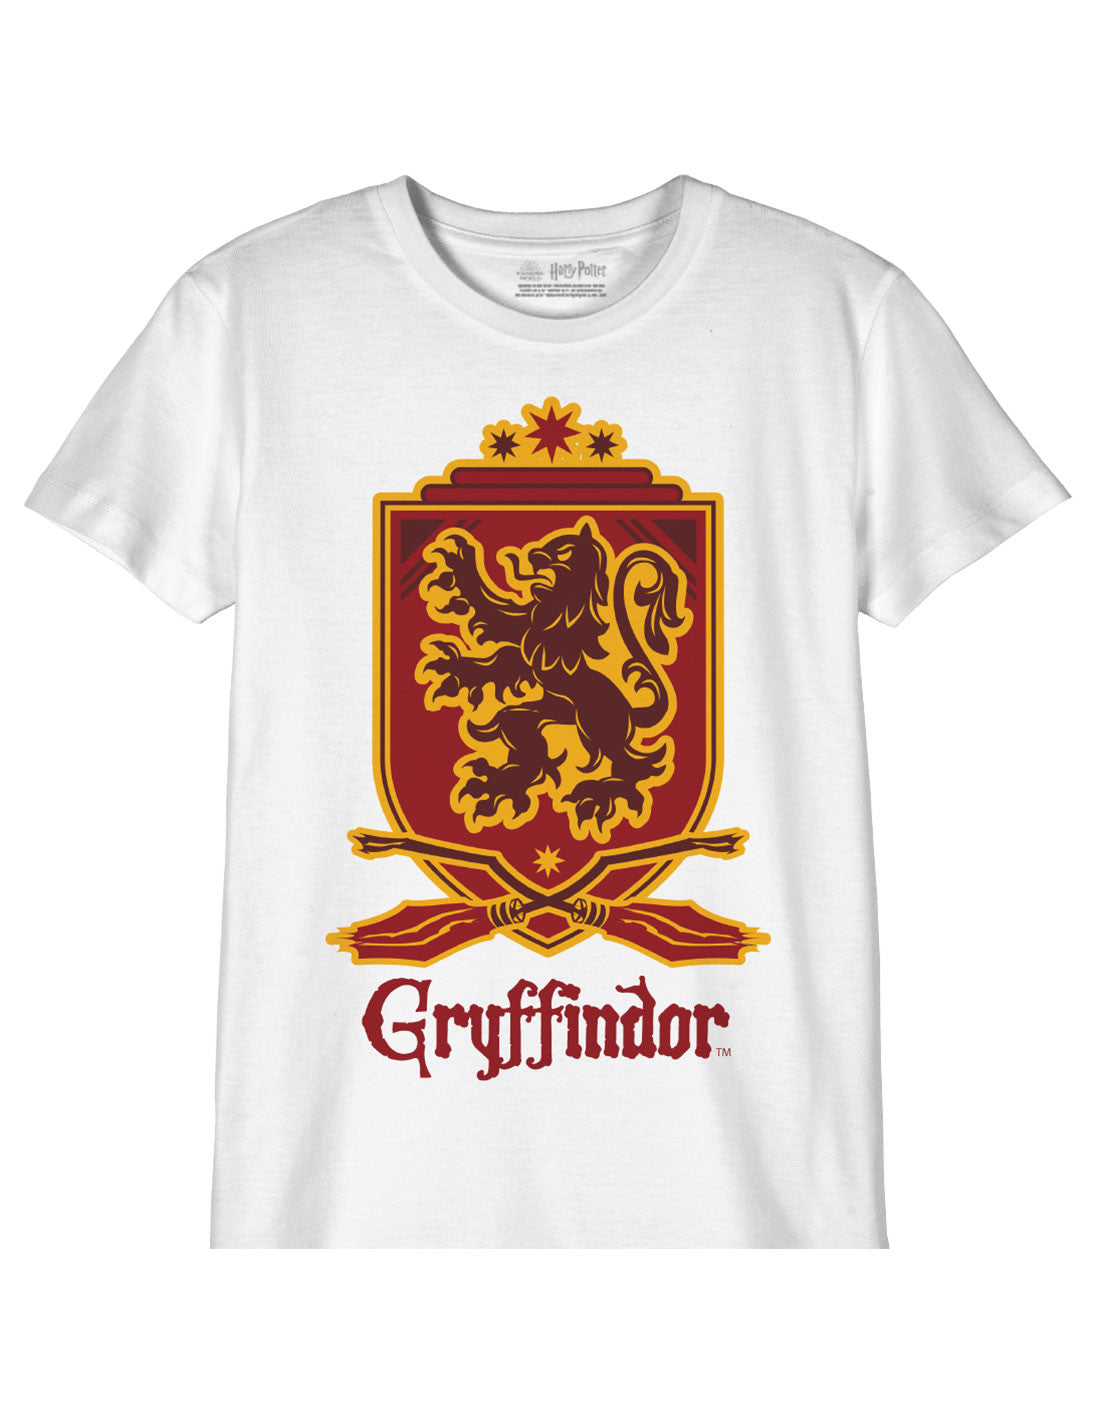 T-shirt Enfant Harry Potter - Gryffindor Gold